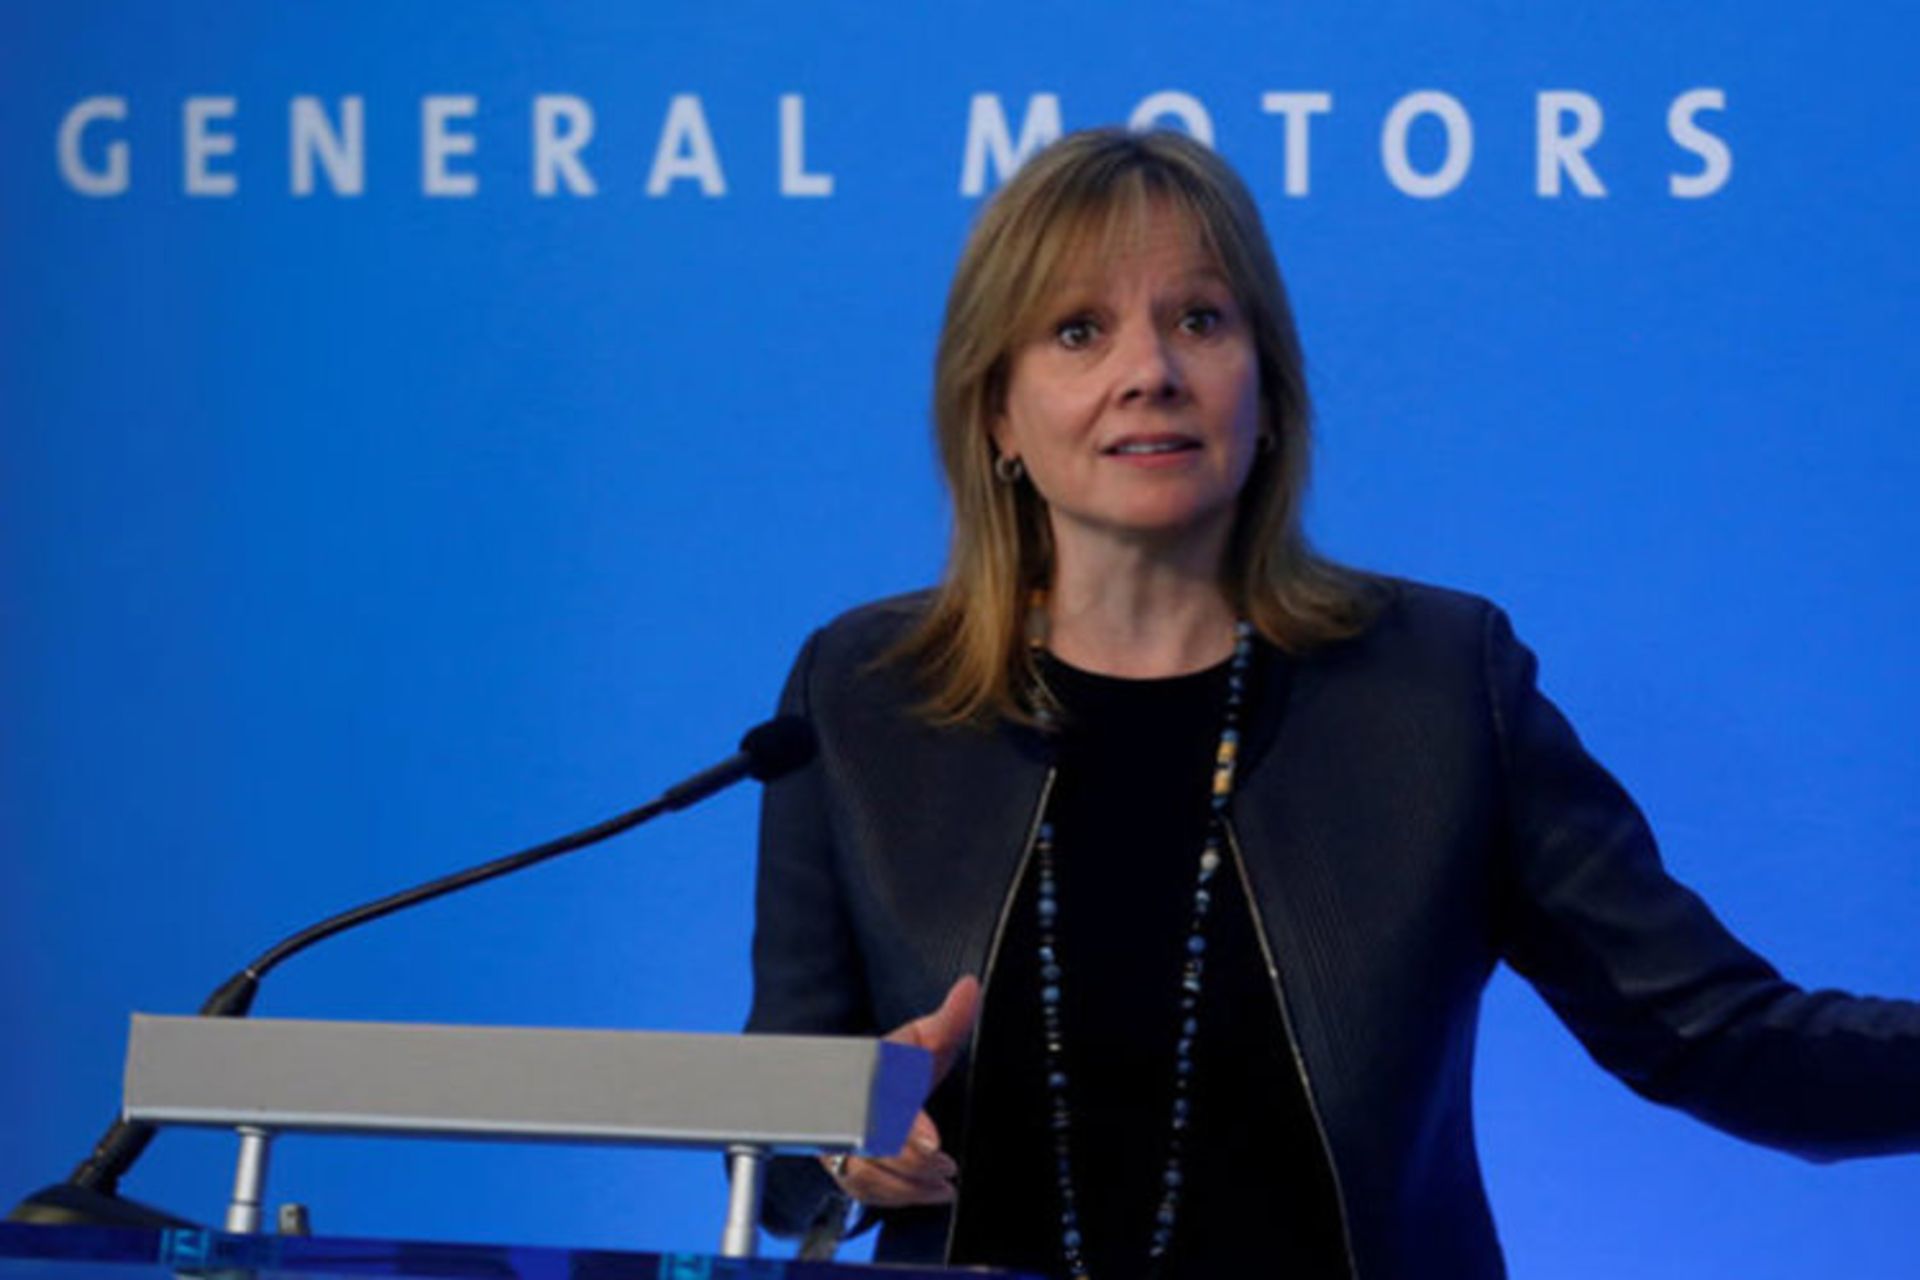 General Motors Mary Barra / مری بارا جنرال موتورز